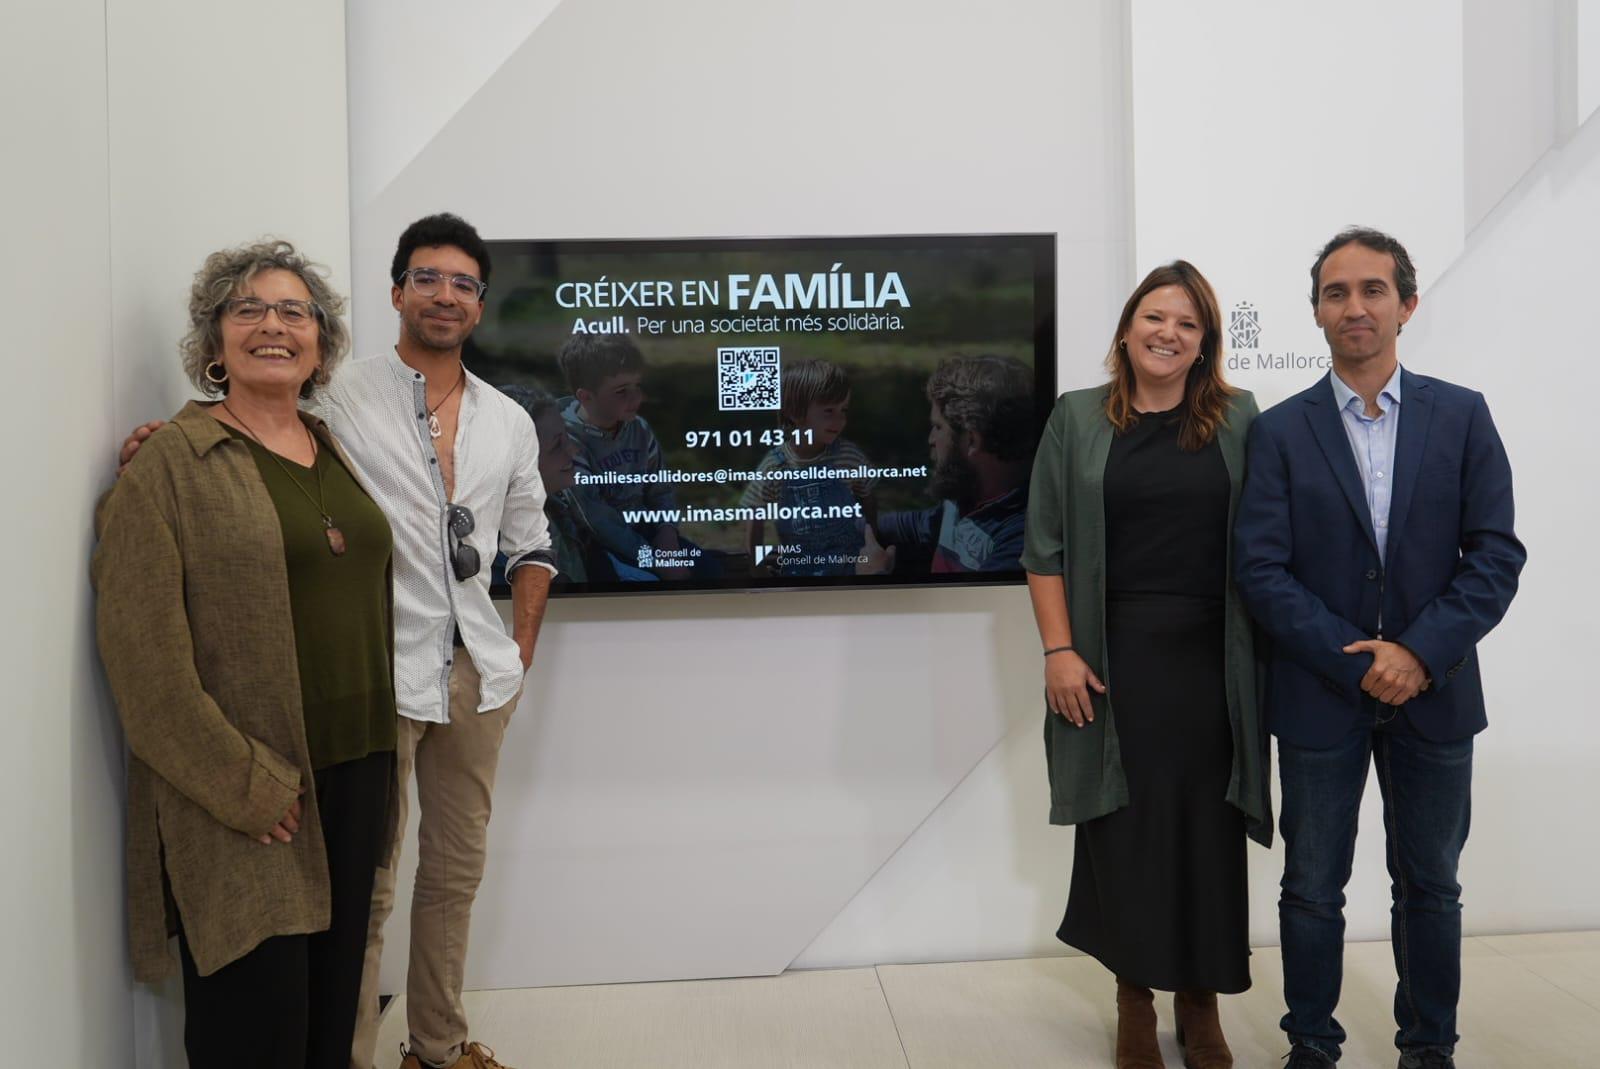 "Créixer en família", nova campanya de l'IMAS per fomentar l’acolliment familiar